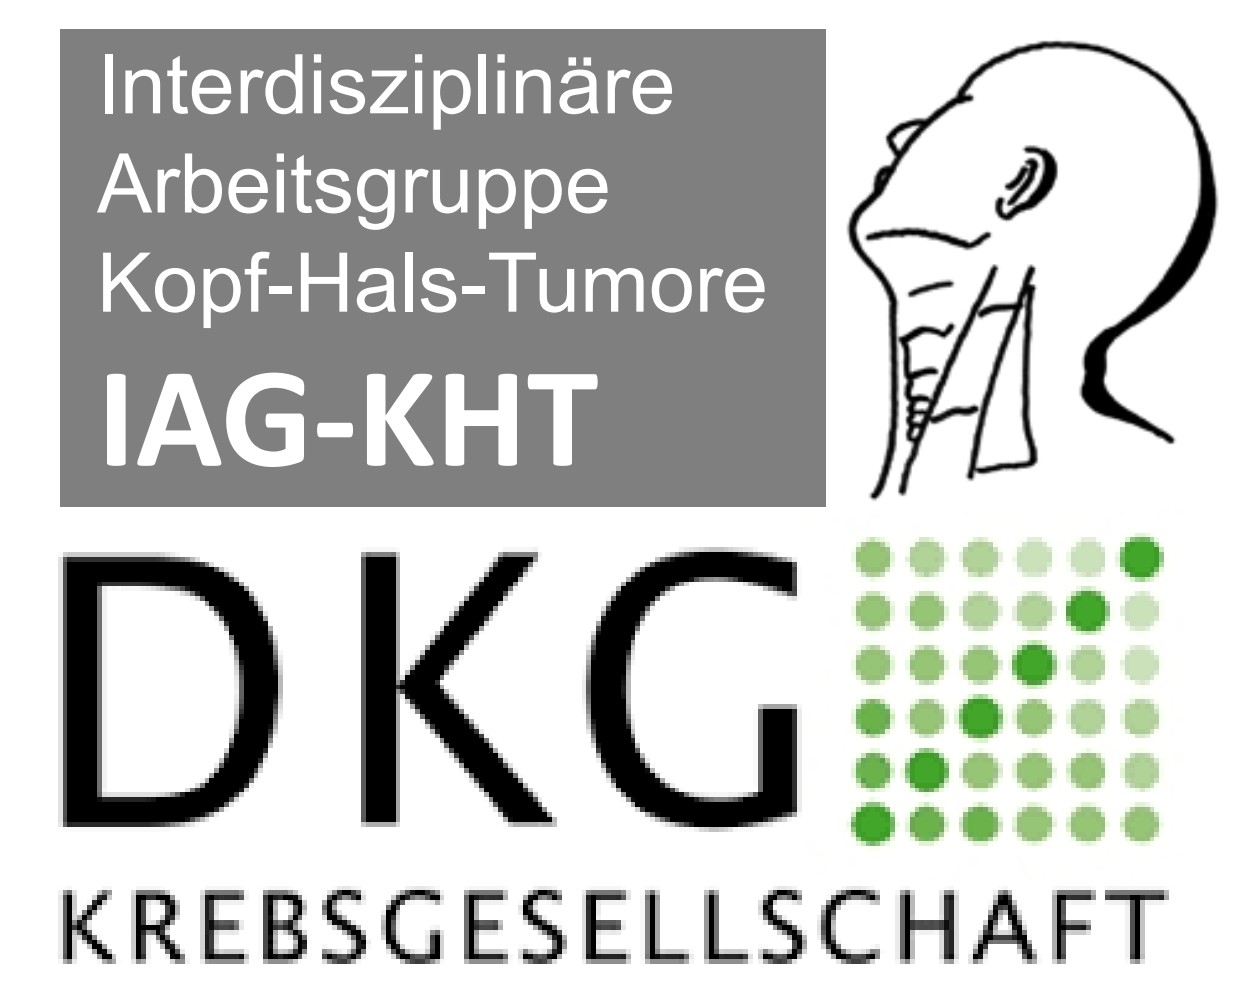 Herbstsymposium der IAG-KHT am 19.10.2022